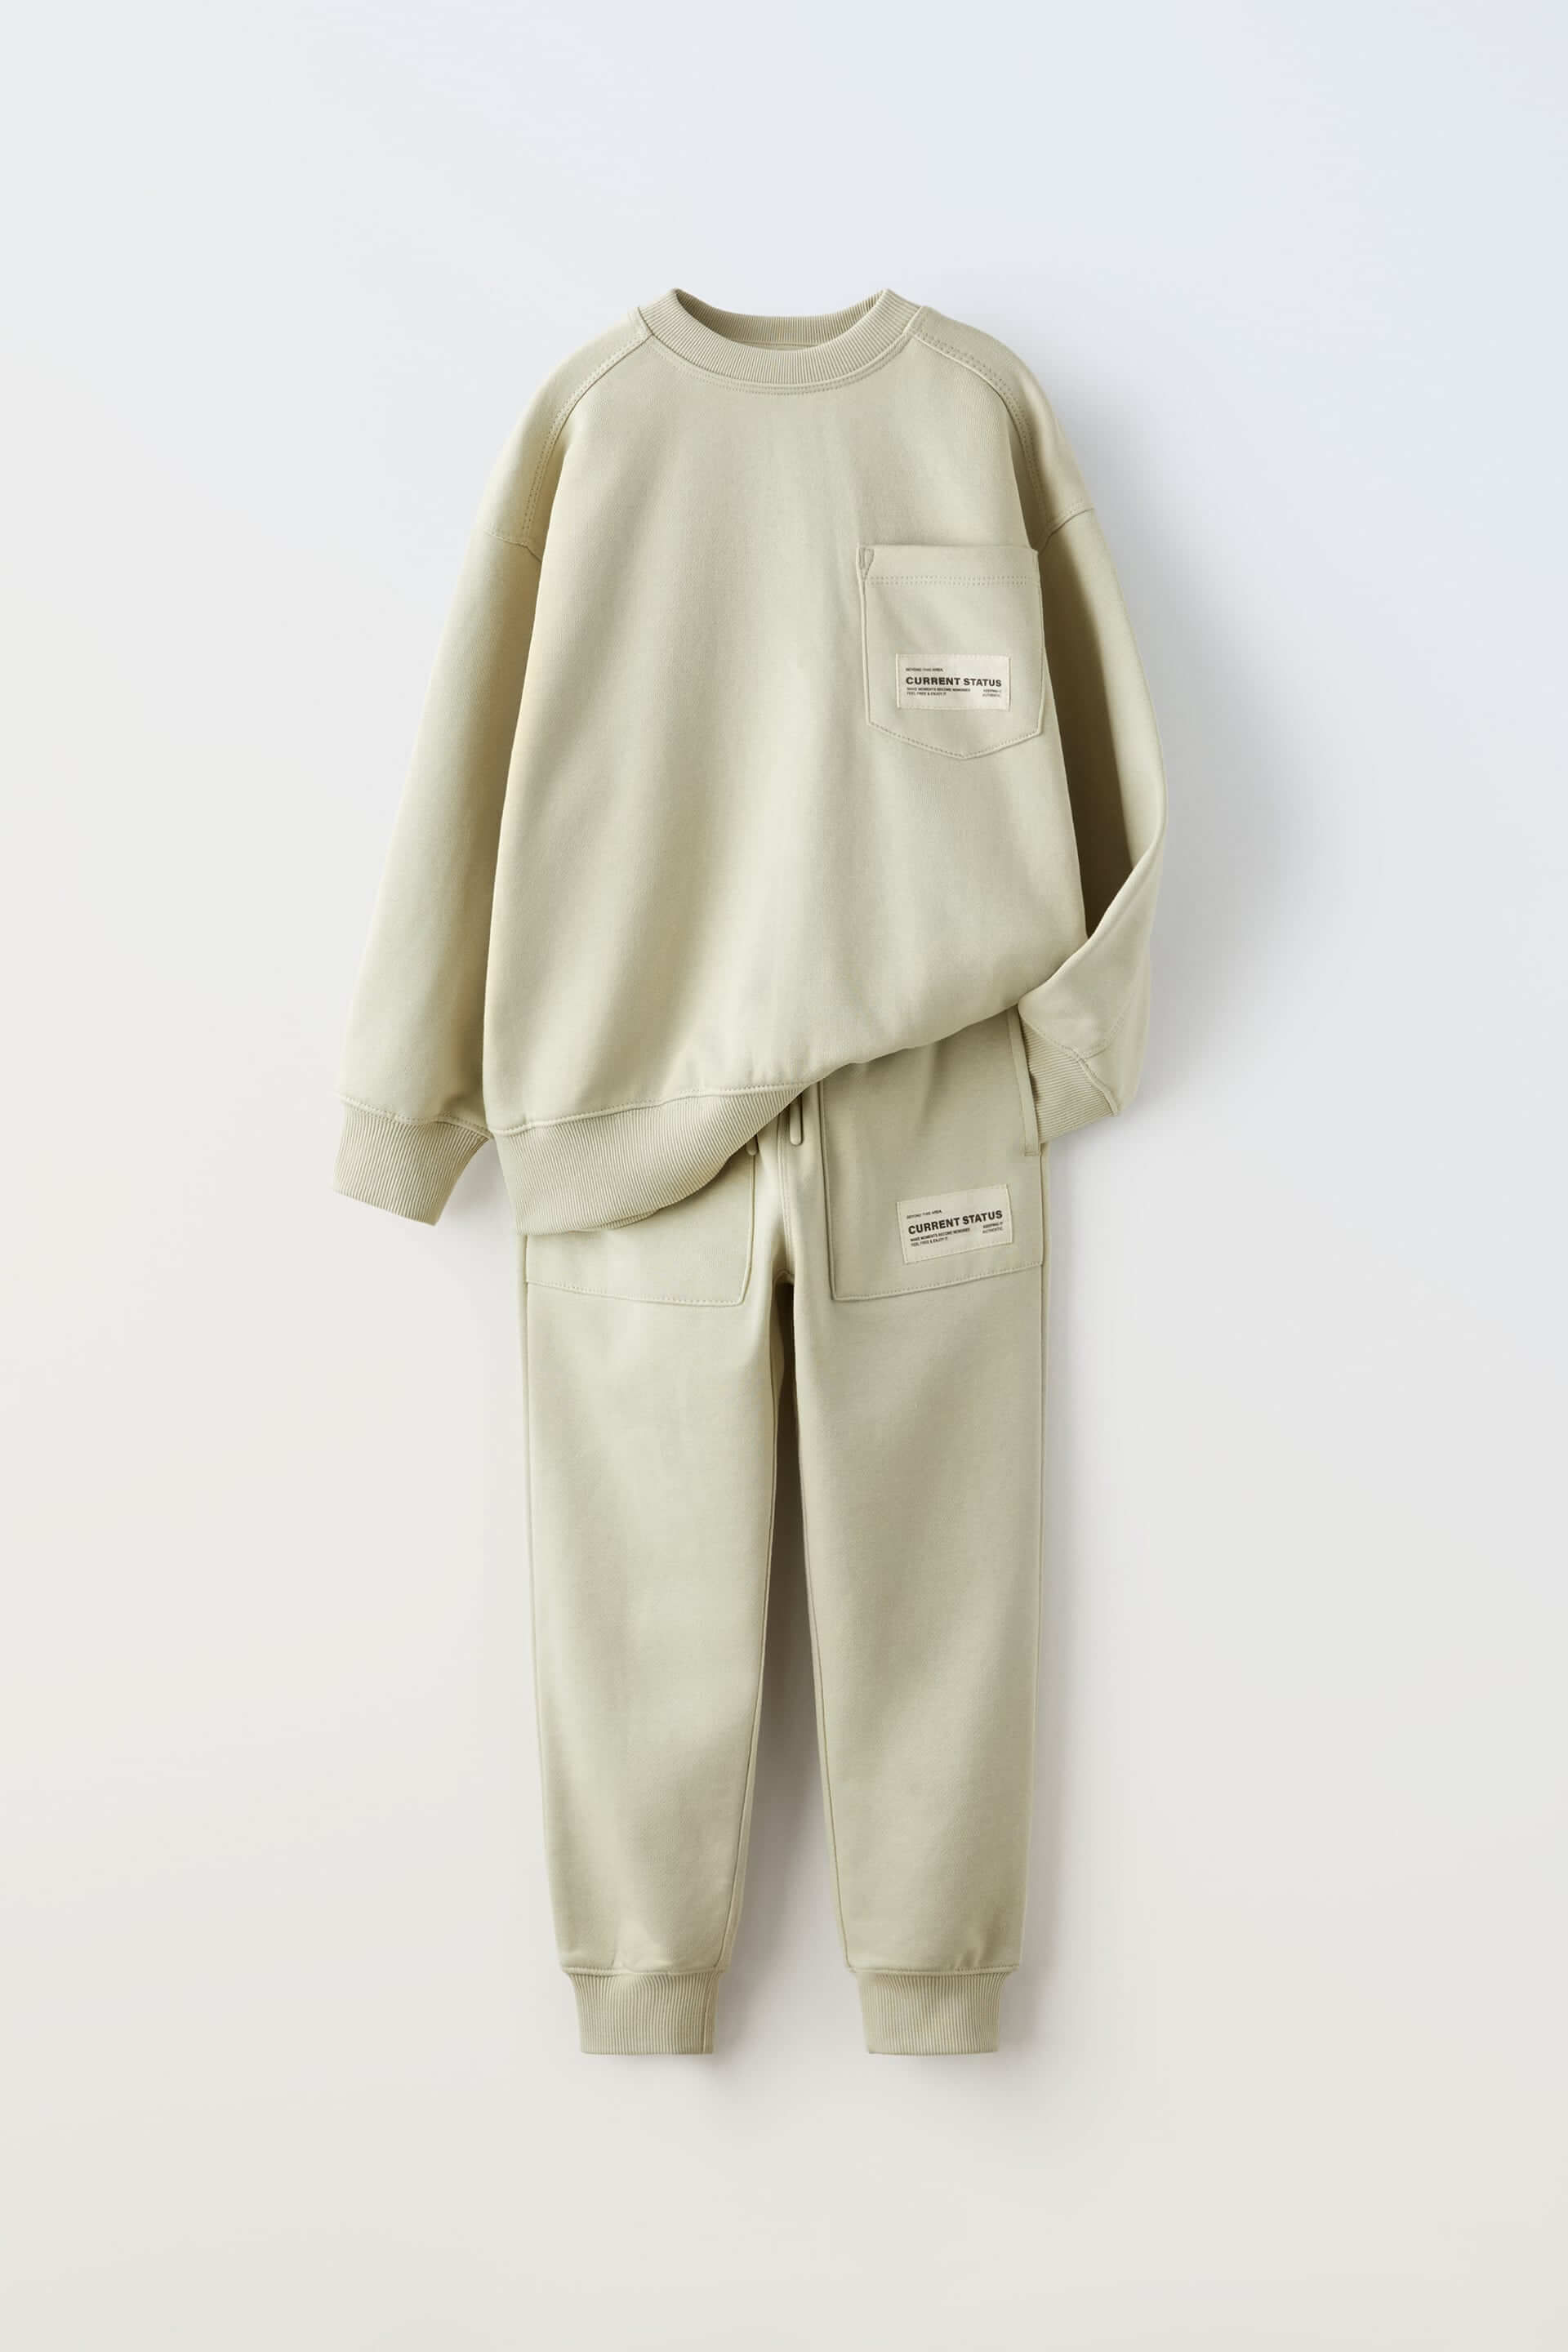 Комплект из свитшота и брюк Zara Plush, 2 предмета, зеленый / экрю комплект zara kids plush 2 предмета темно серый